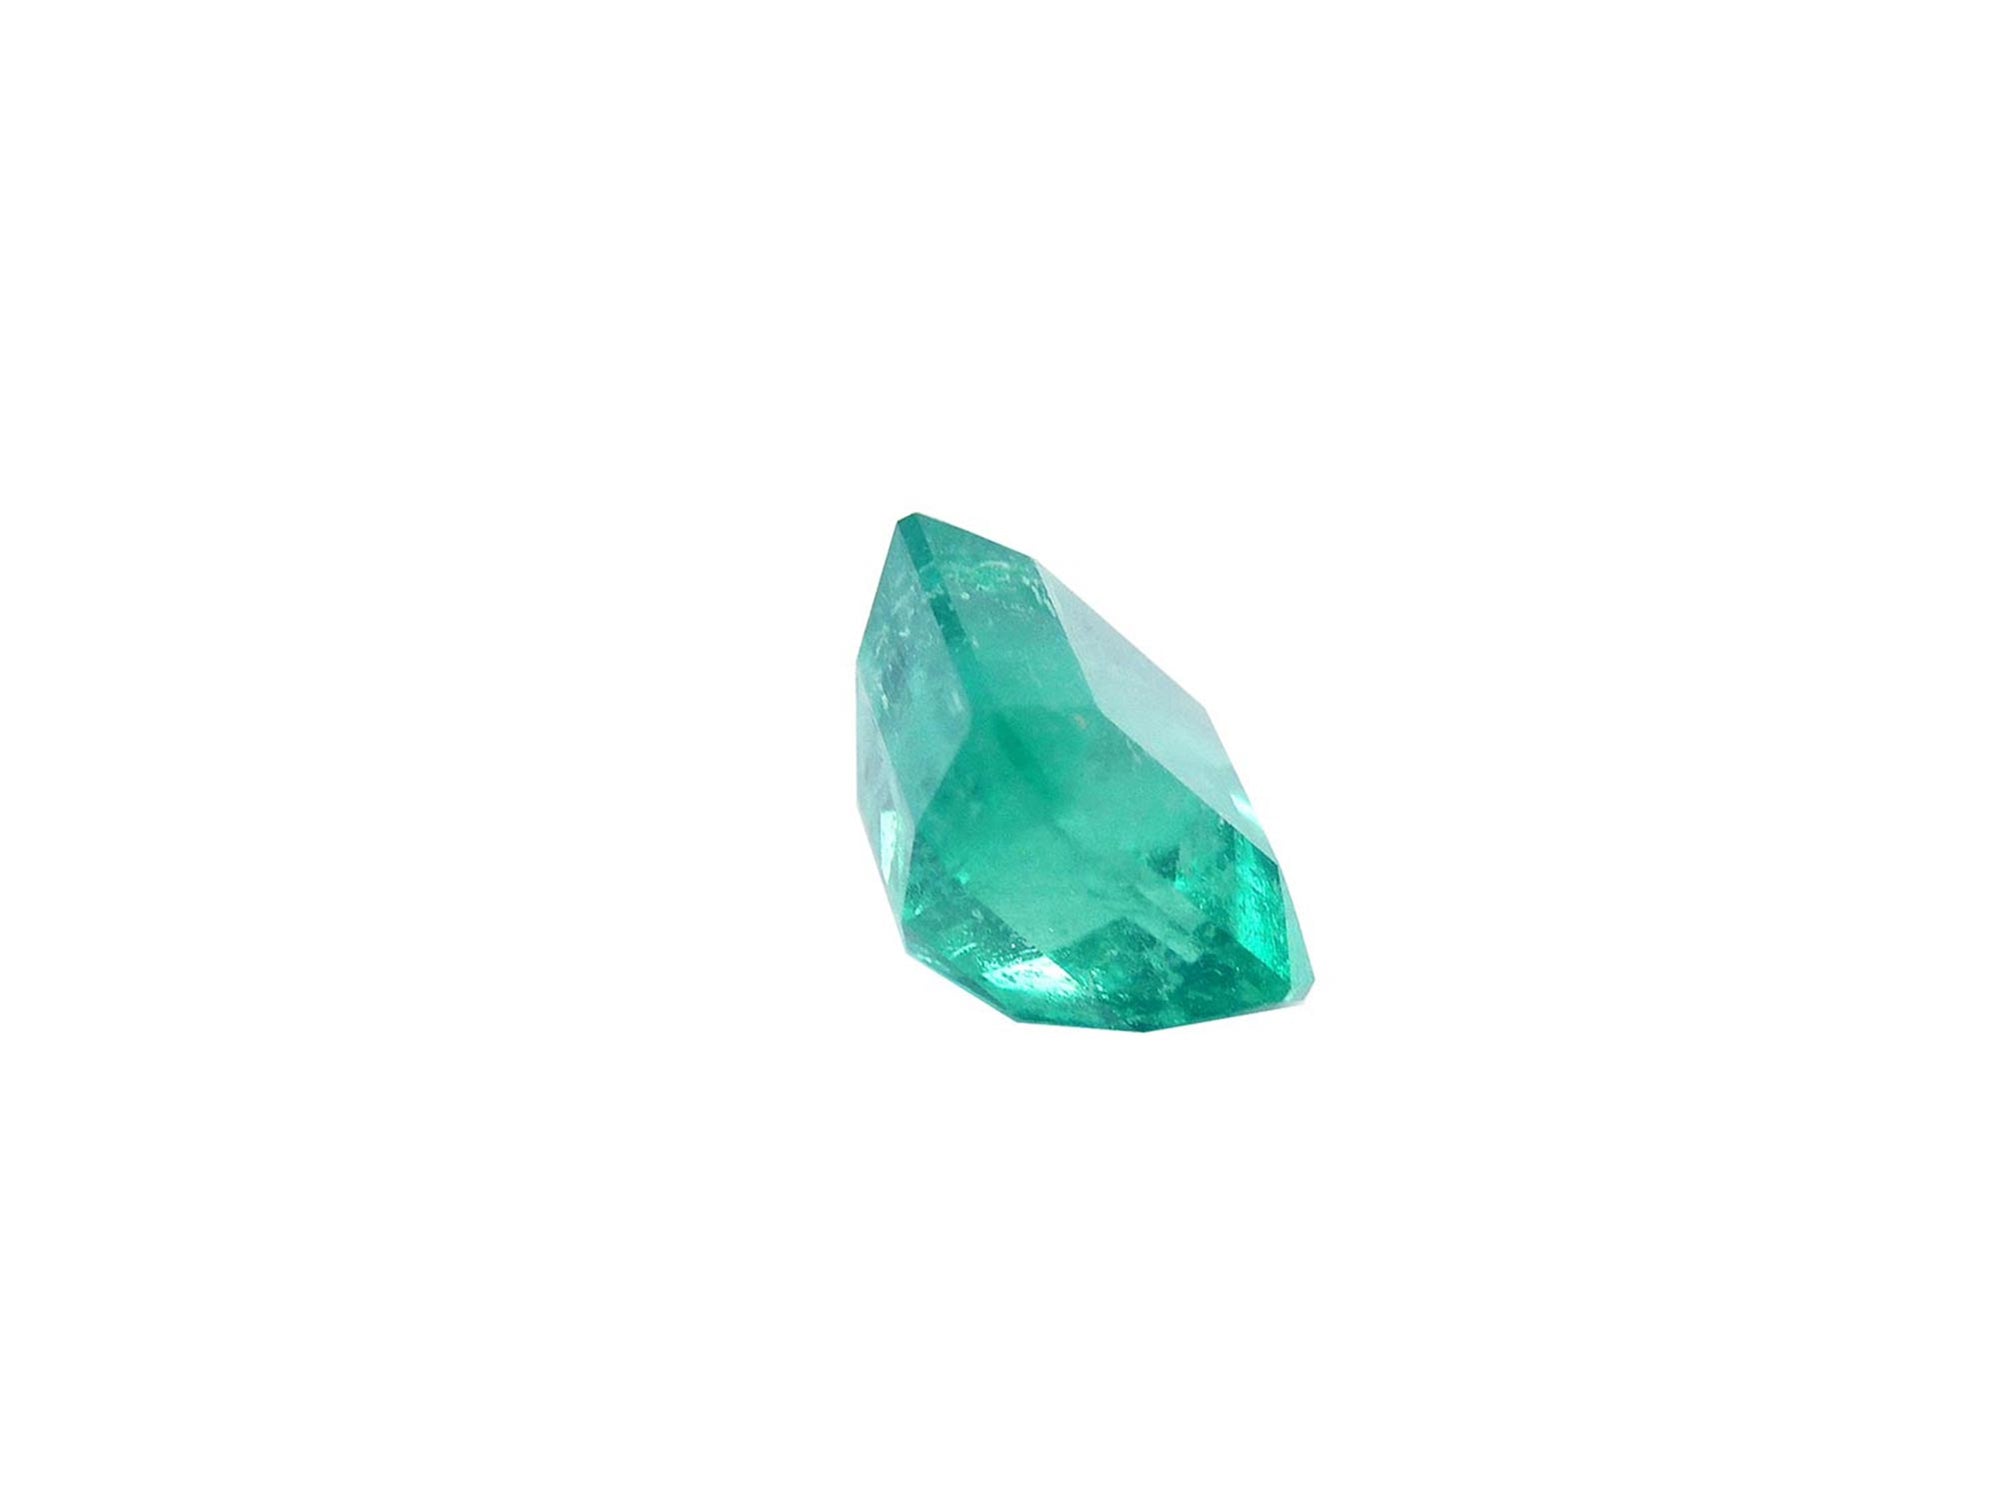 Octagonal emerald-cut emerald